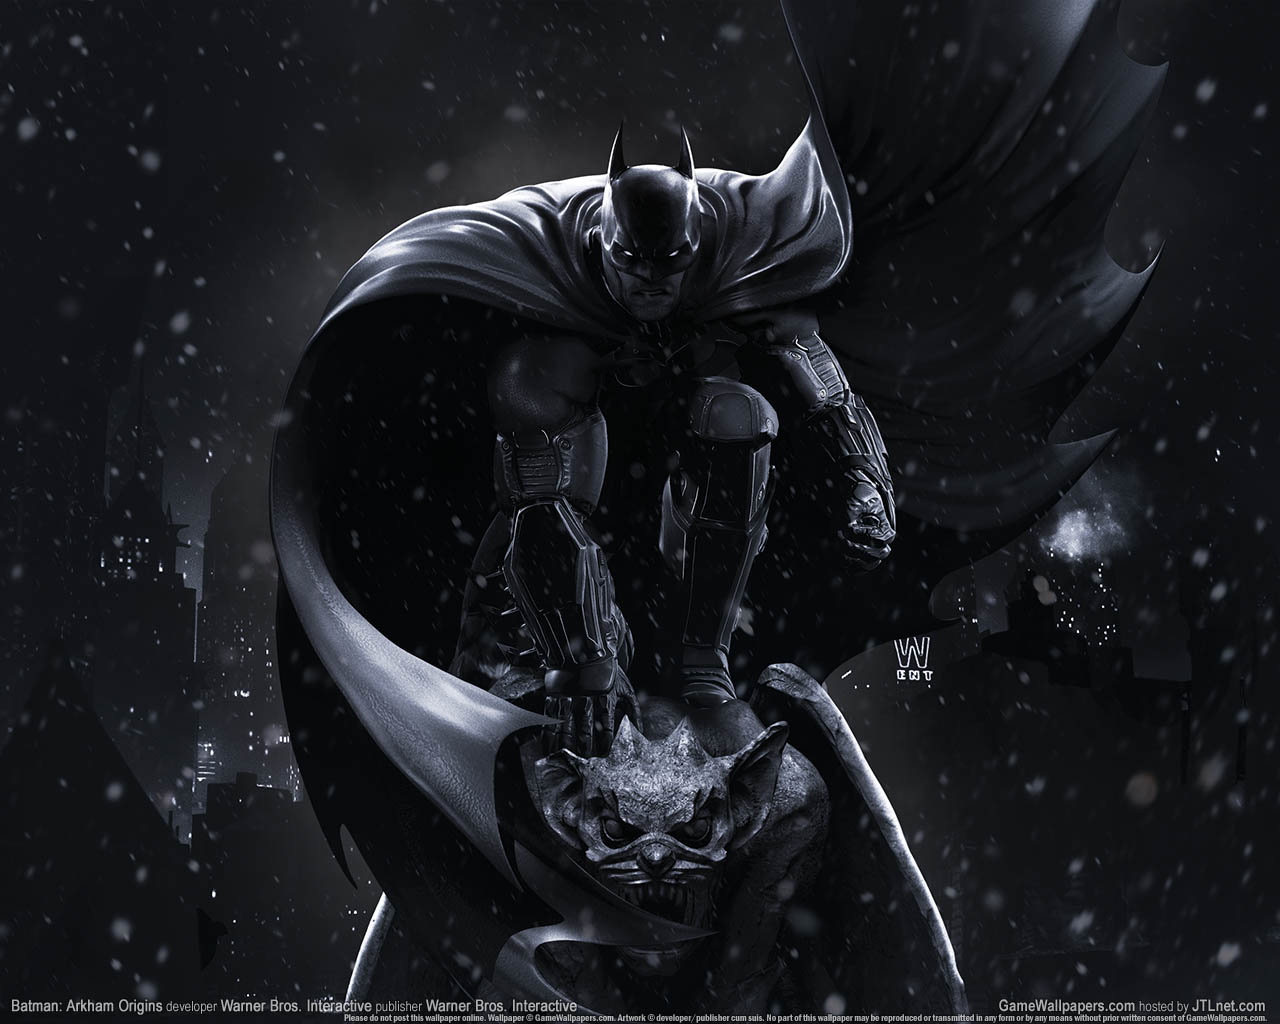 Batman: Arkham Origins fond d'cran 03 1280x1024